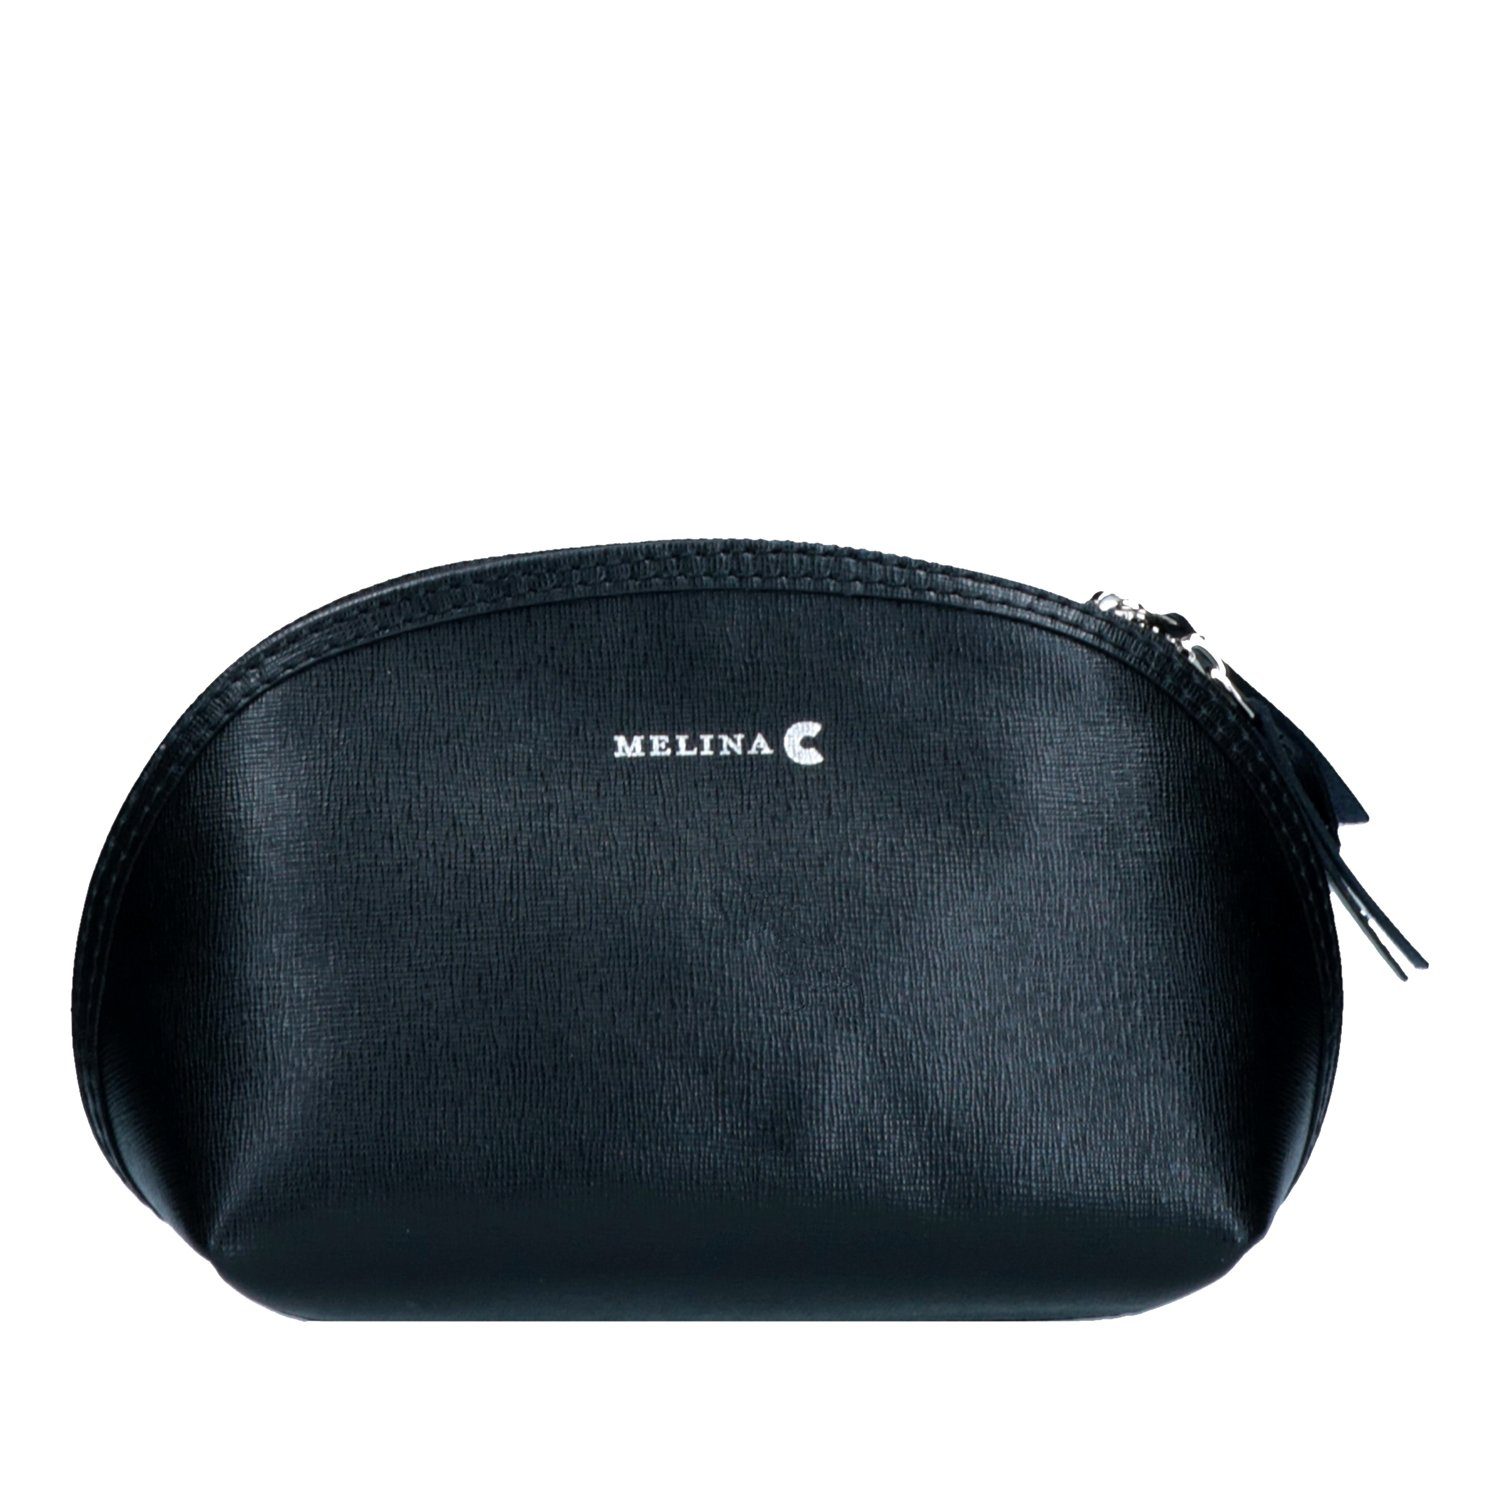 Melina C C Echtleder Melina Umhängetasche Träger Tasche Kosmetiktasche, Verstellbare Schwarz Schulter